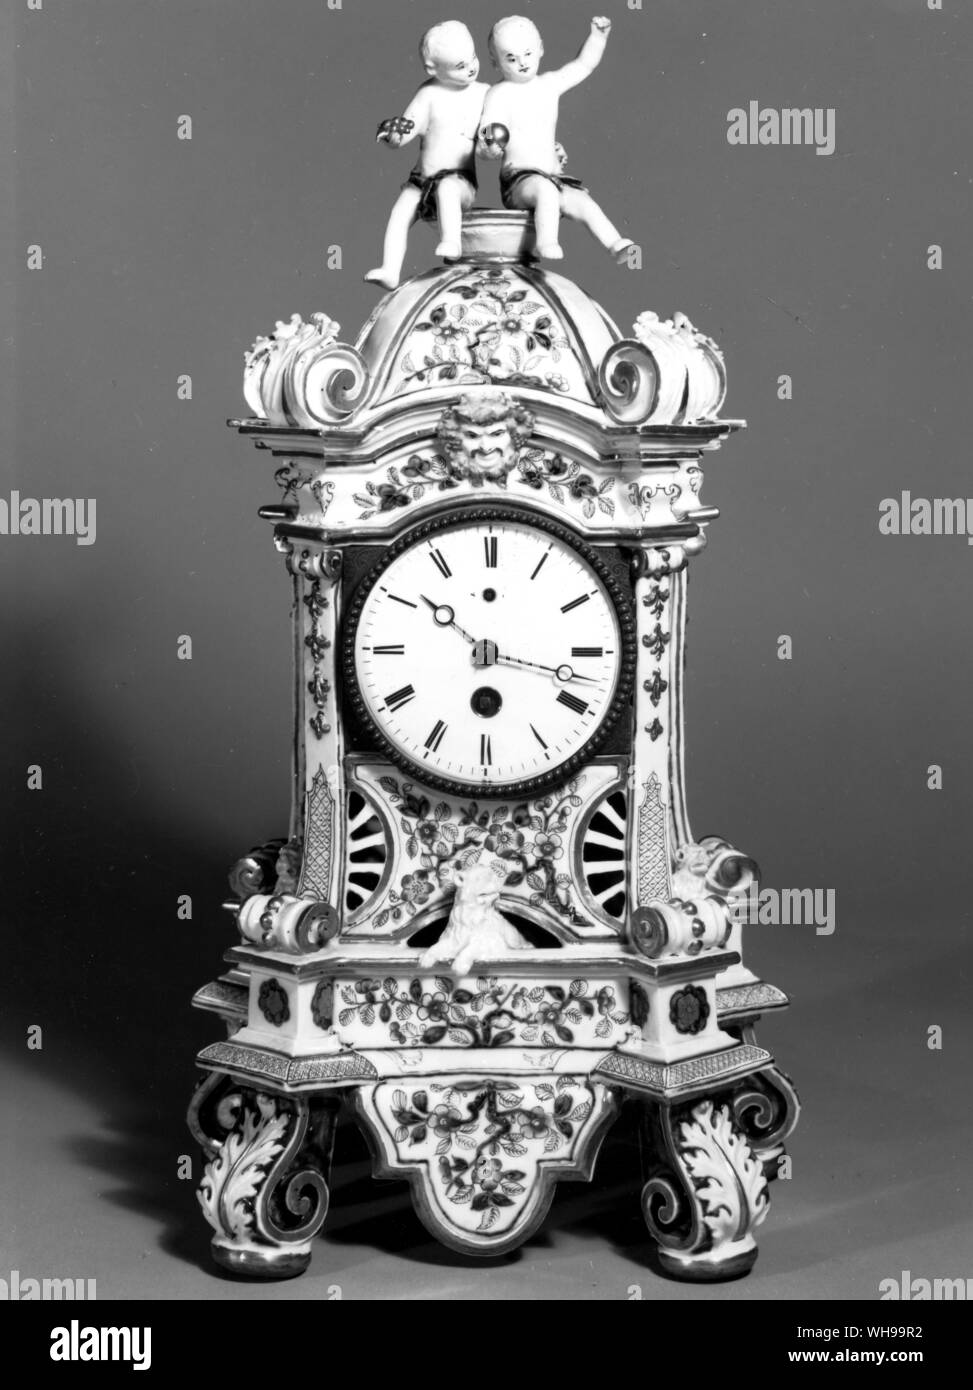 Vienna orologio di porcellana caso il rosso e decorazioni in oro in cinese stile Imari (cioè la copia copia cinese giapponese) Foto Stock